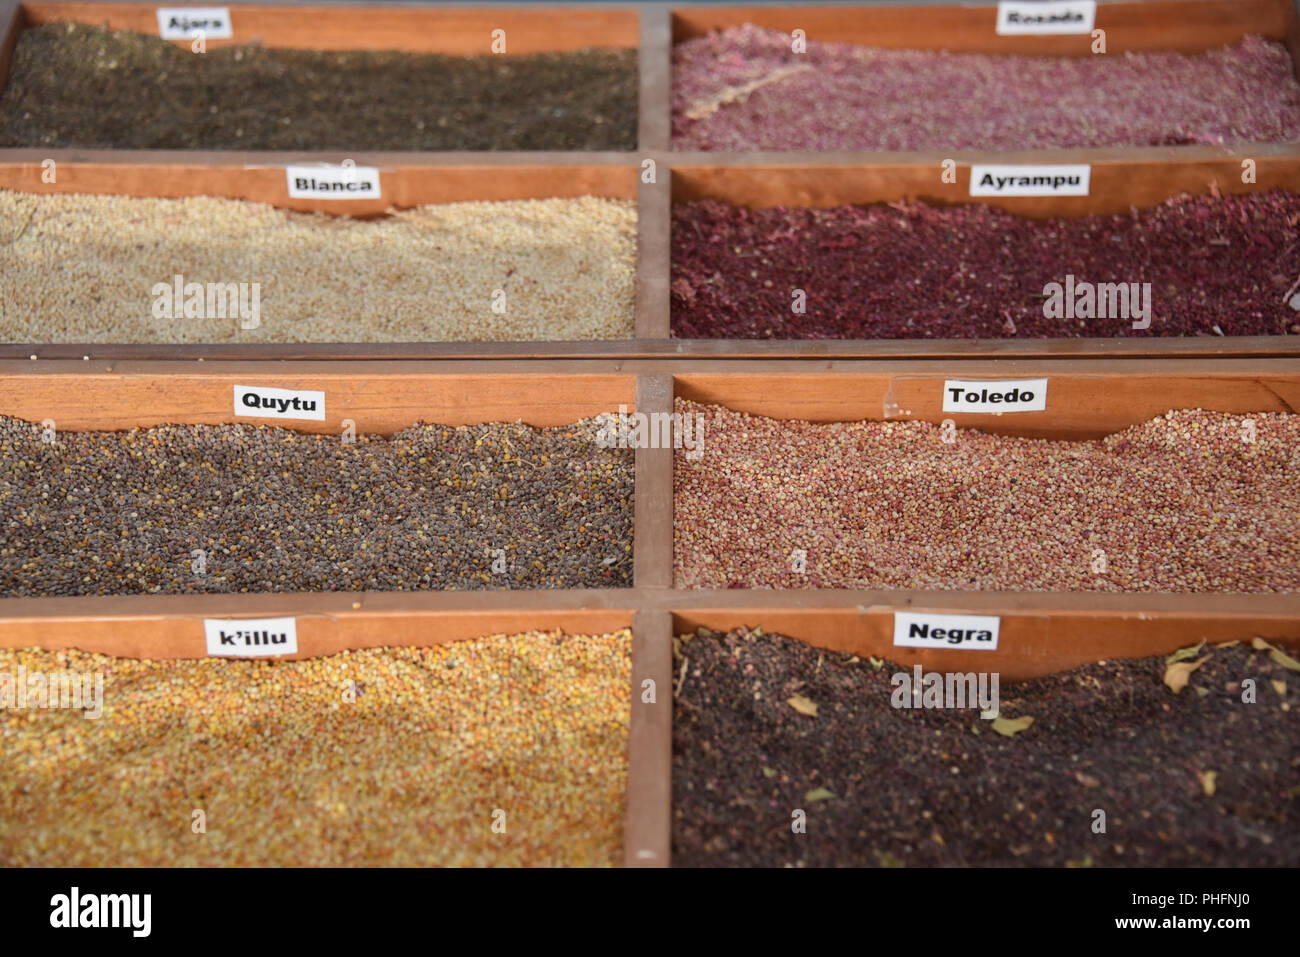 Tipos de quinoa